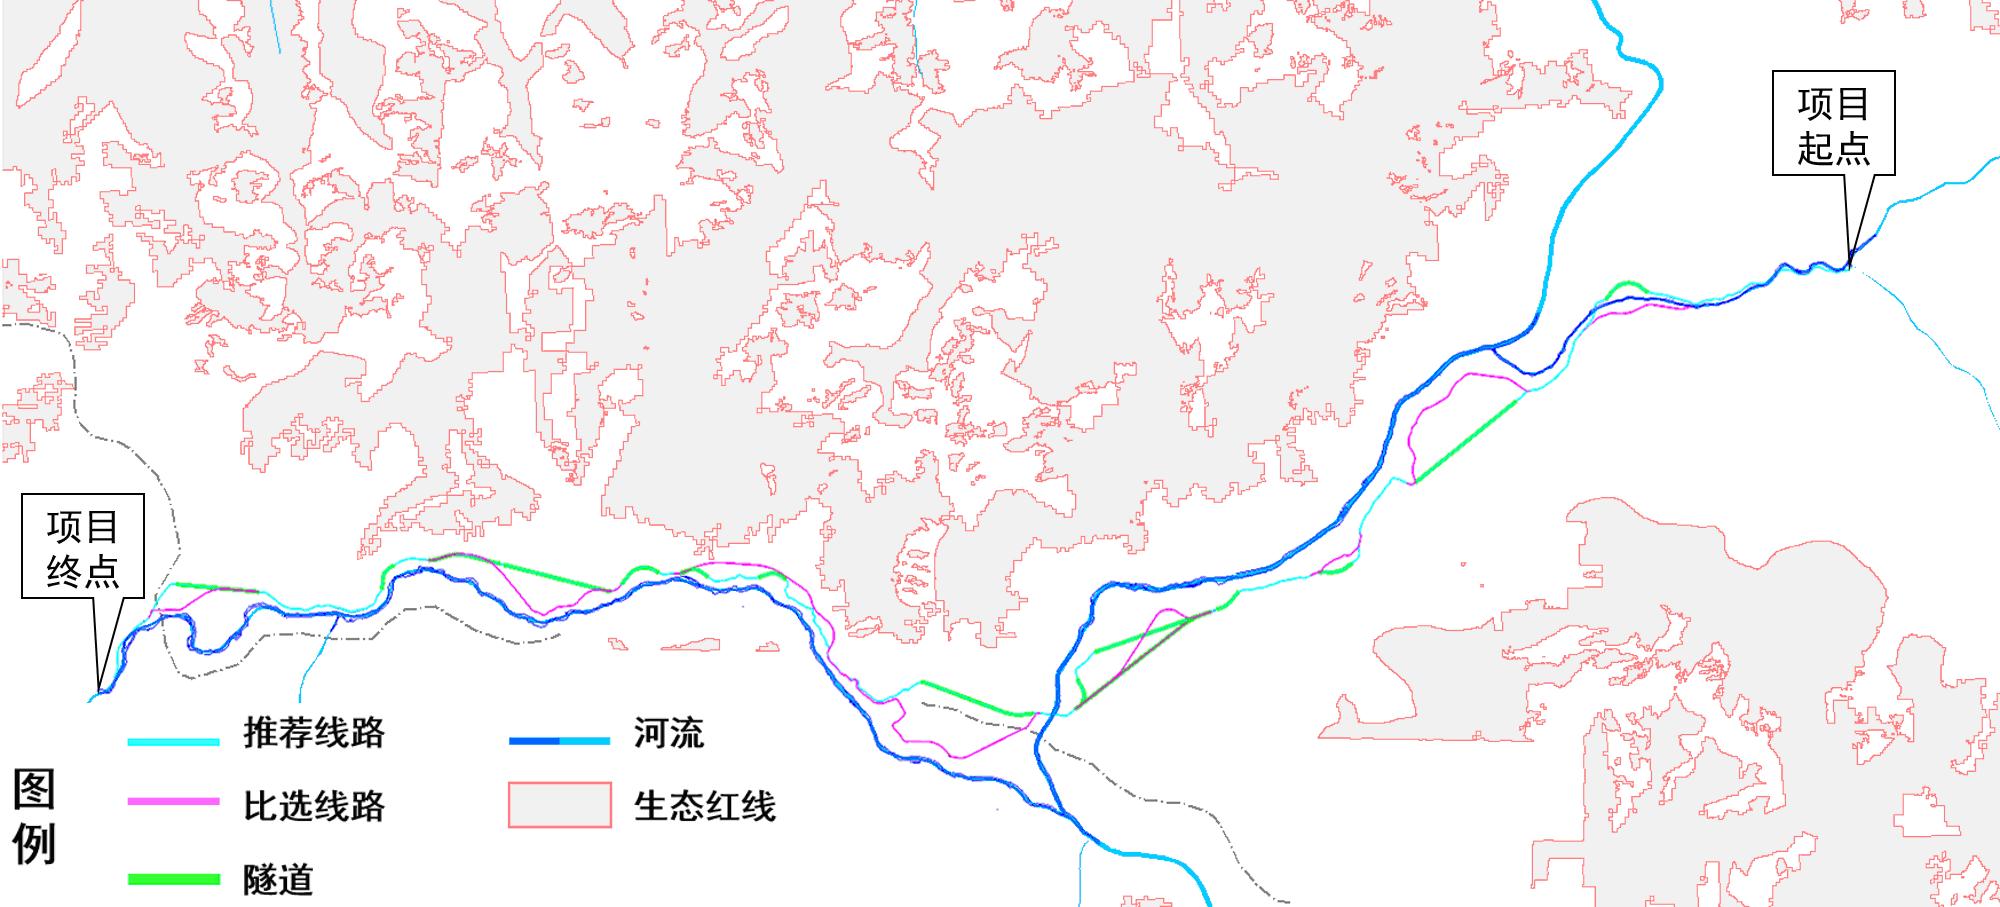 G317 route.JPG